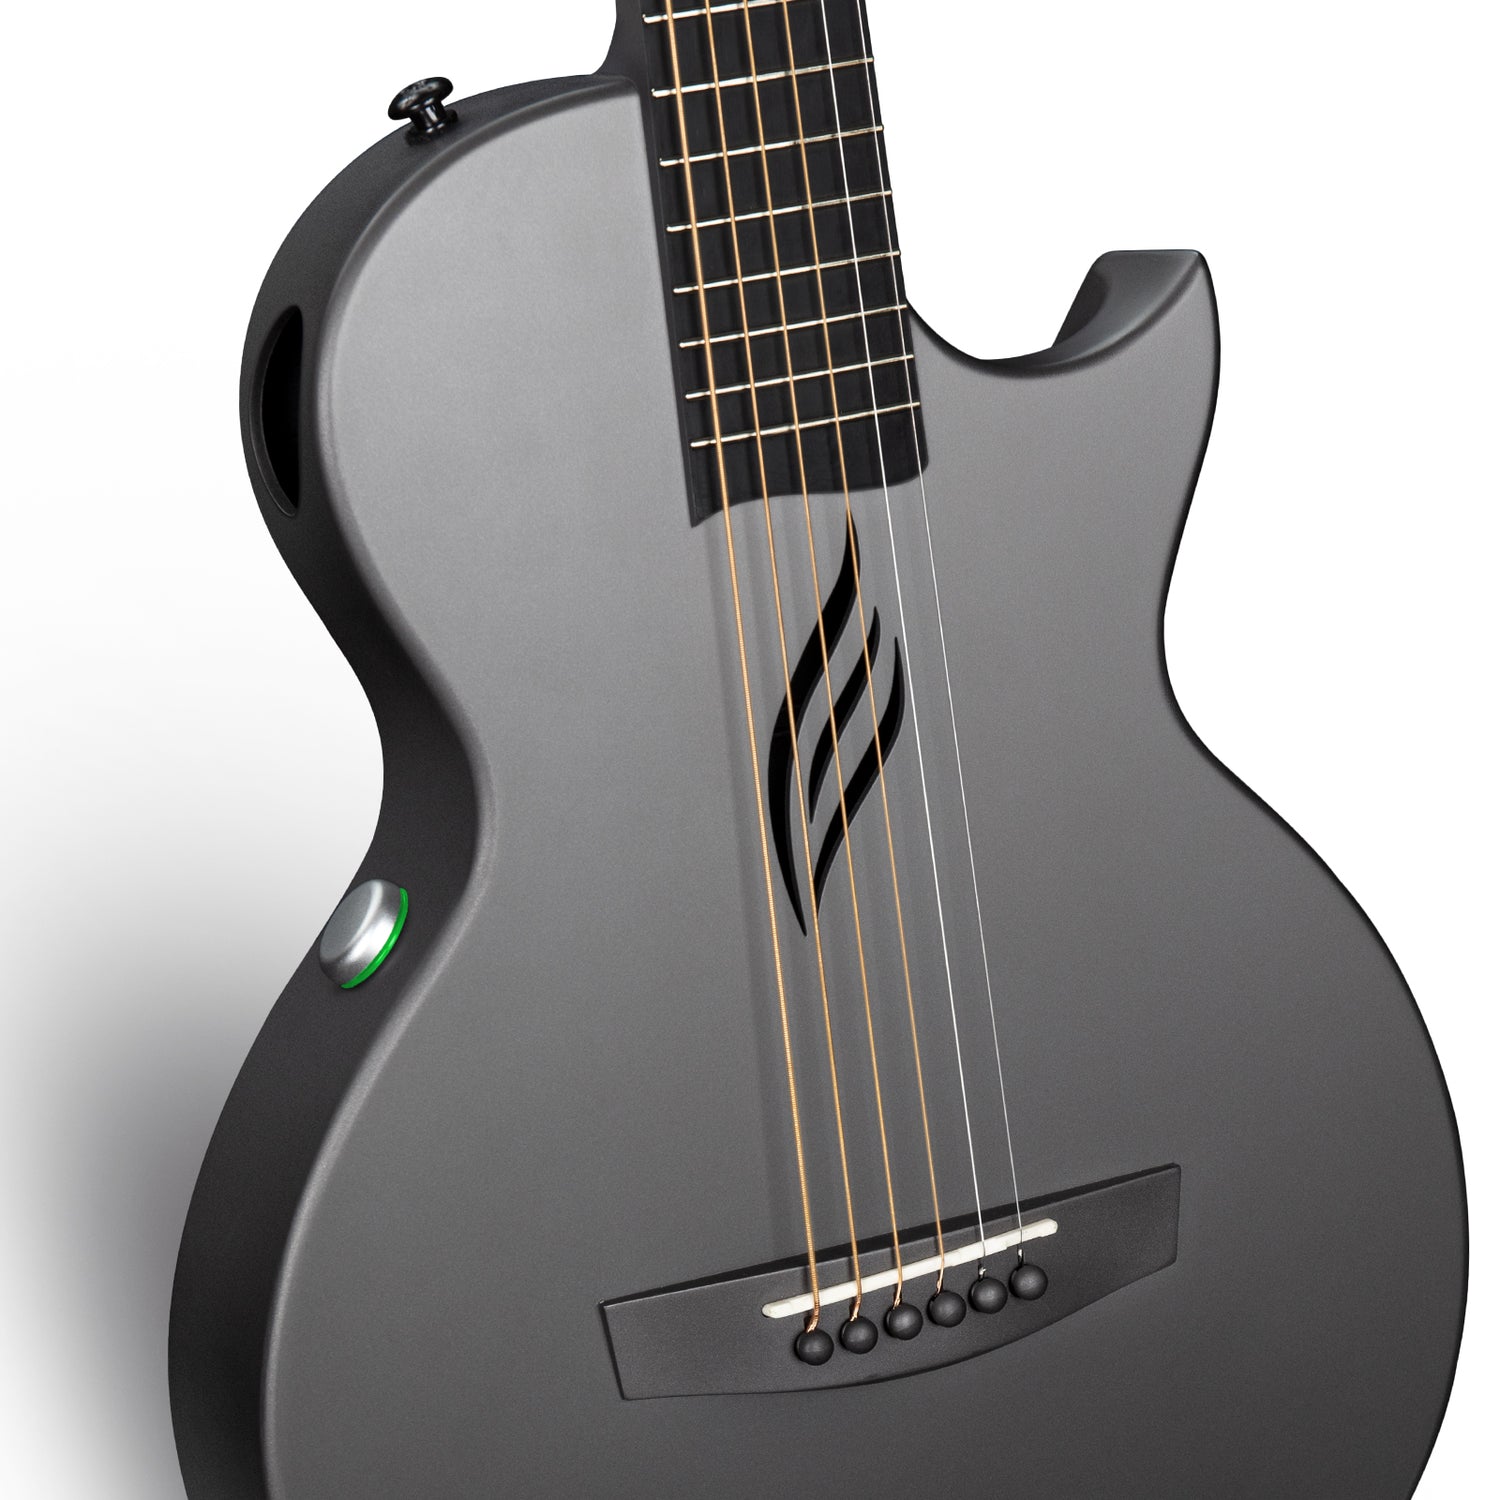 Enya Nova Go SP1 Carbon Fibre Electro-Acoustic Guitar in Black